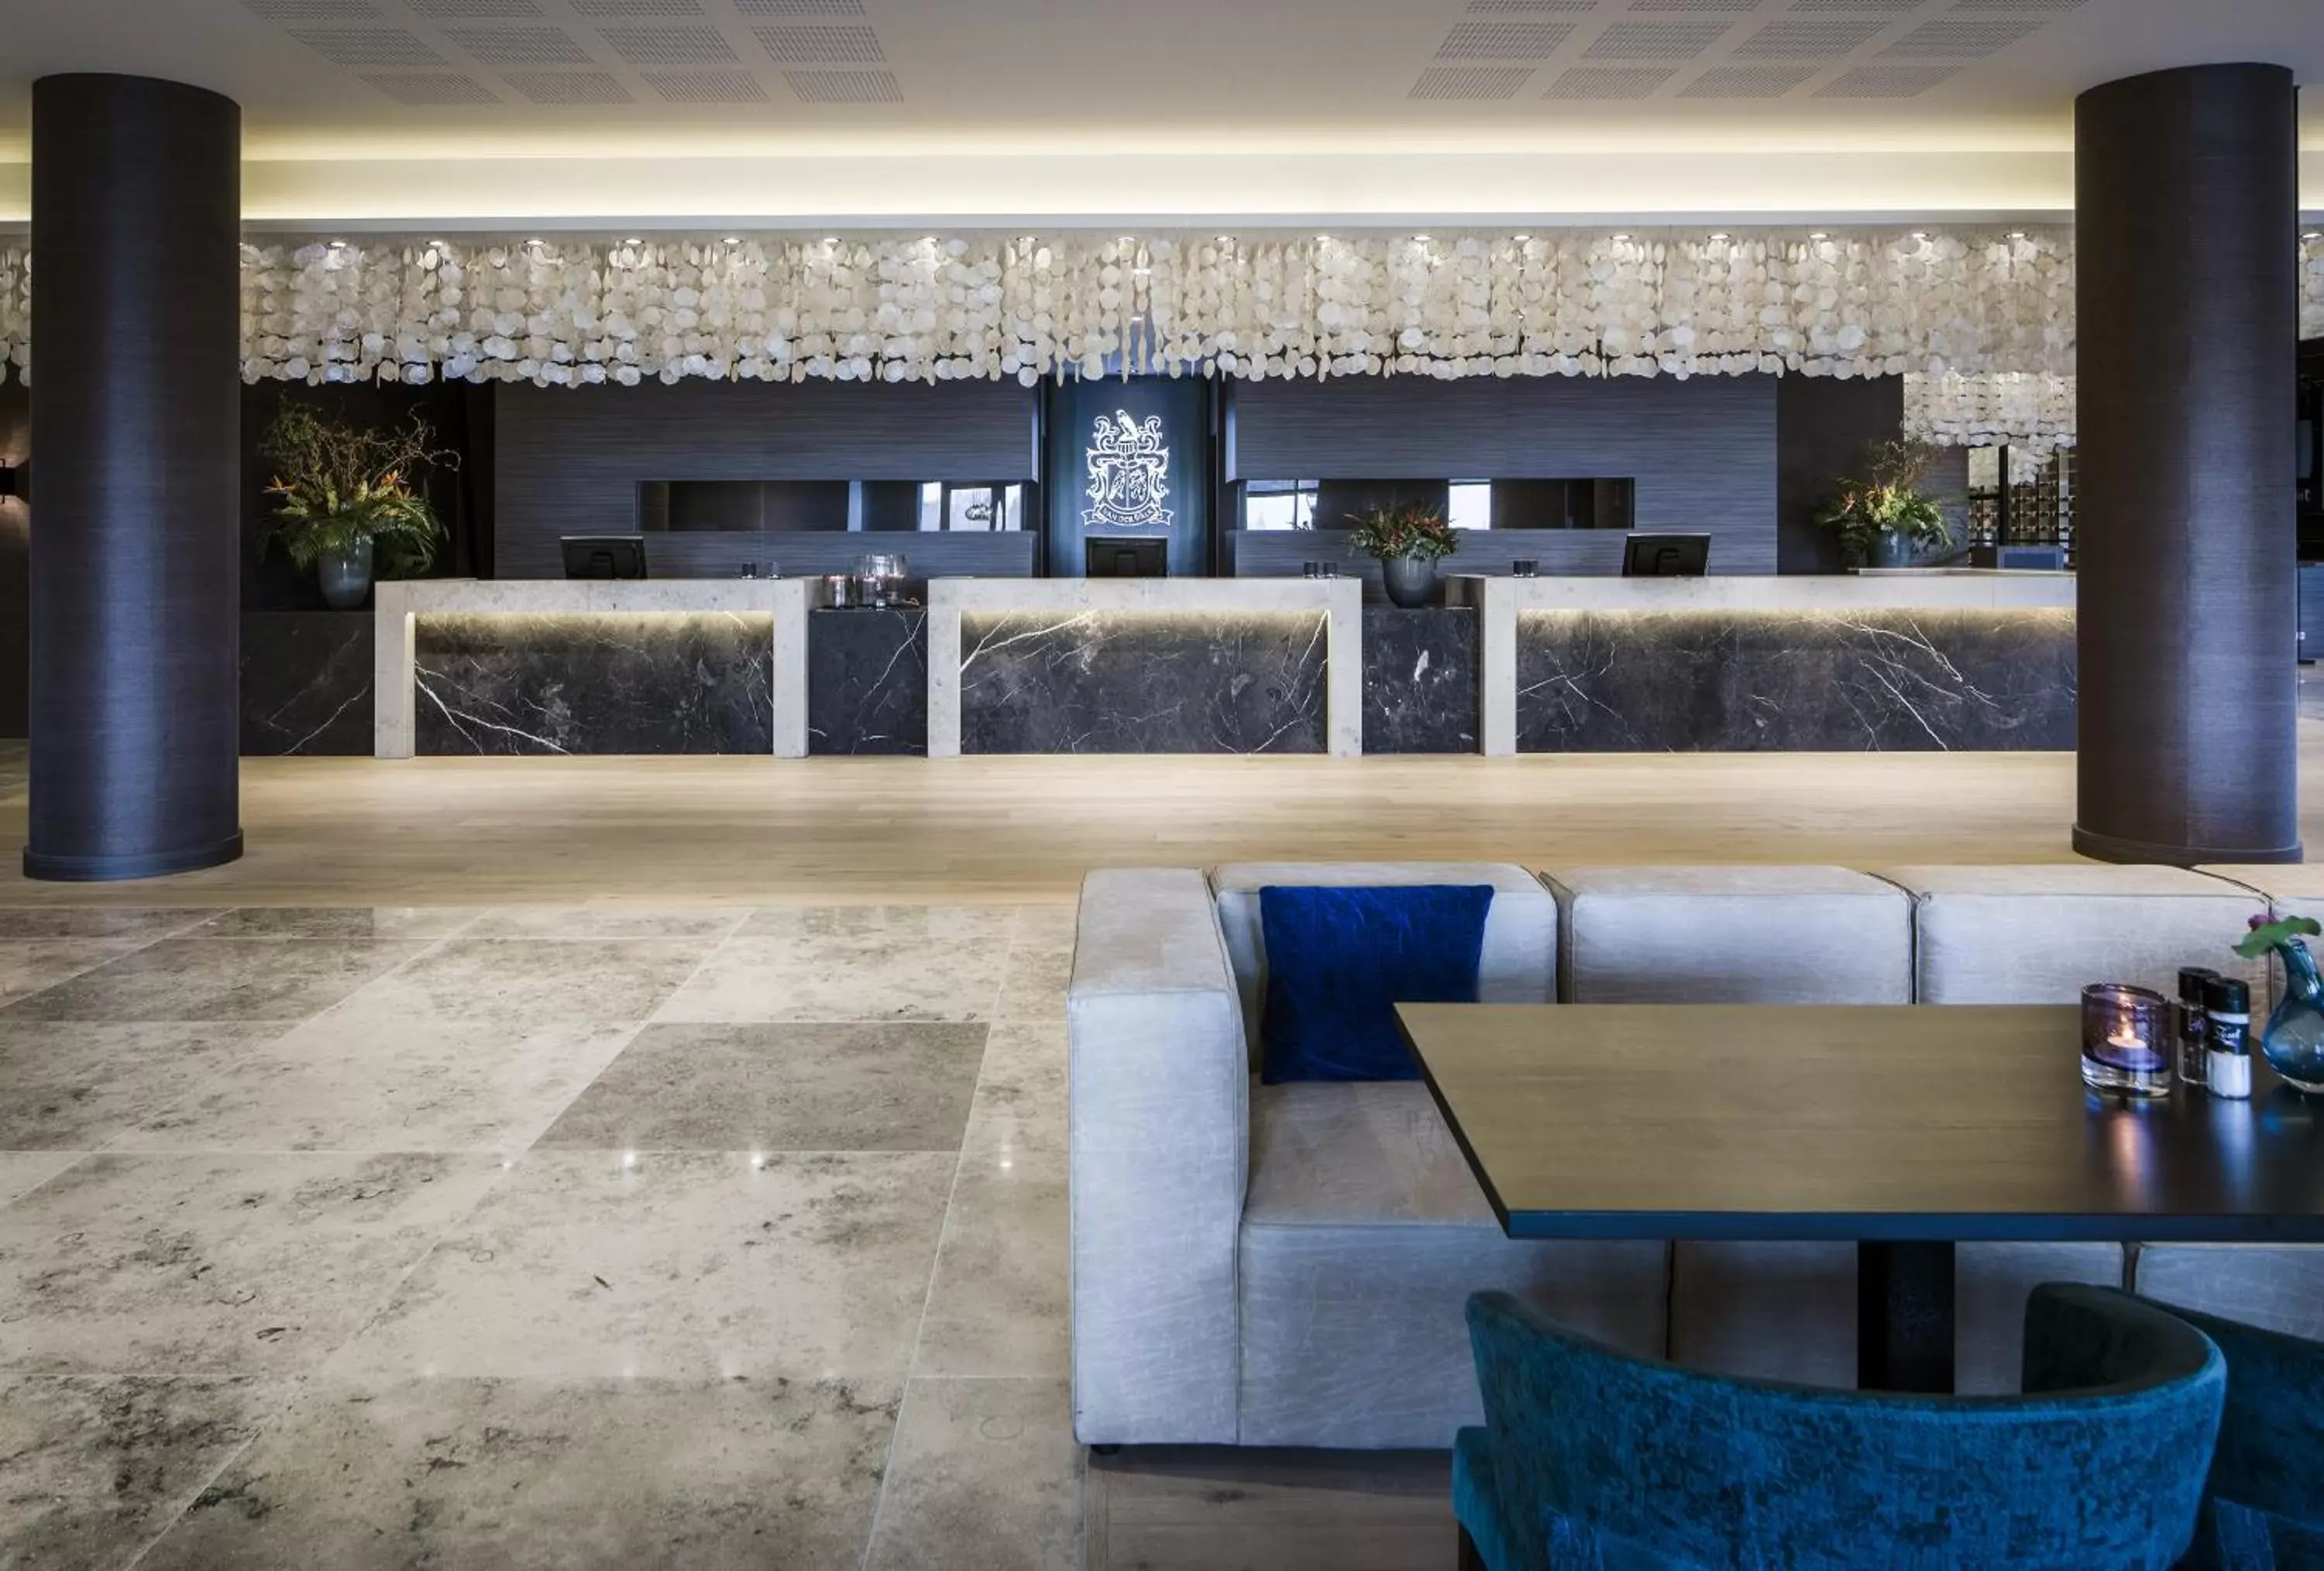 Lobby or reception in Van Der Valk Hotel Zwolle